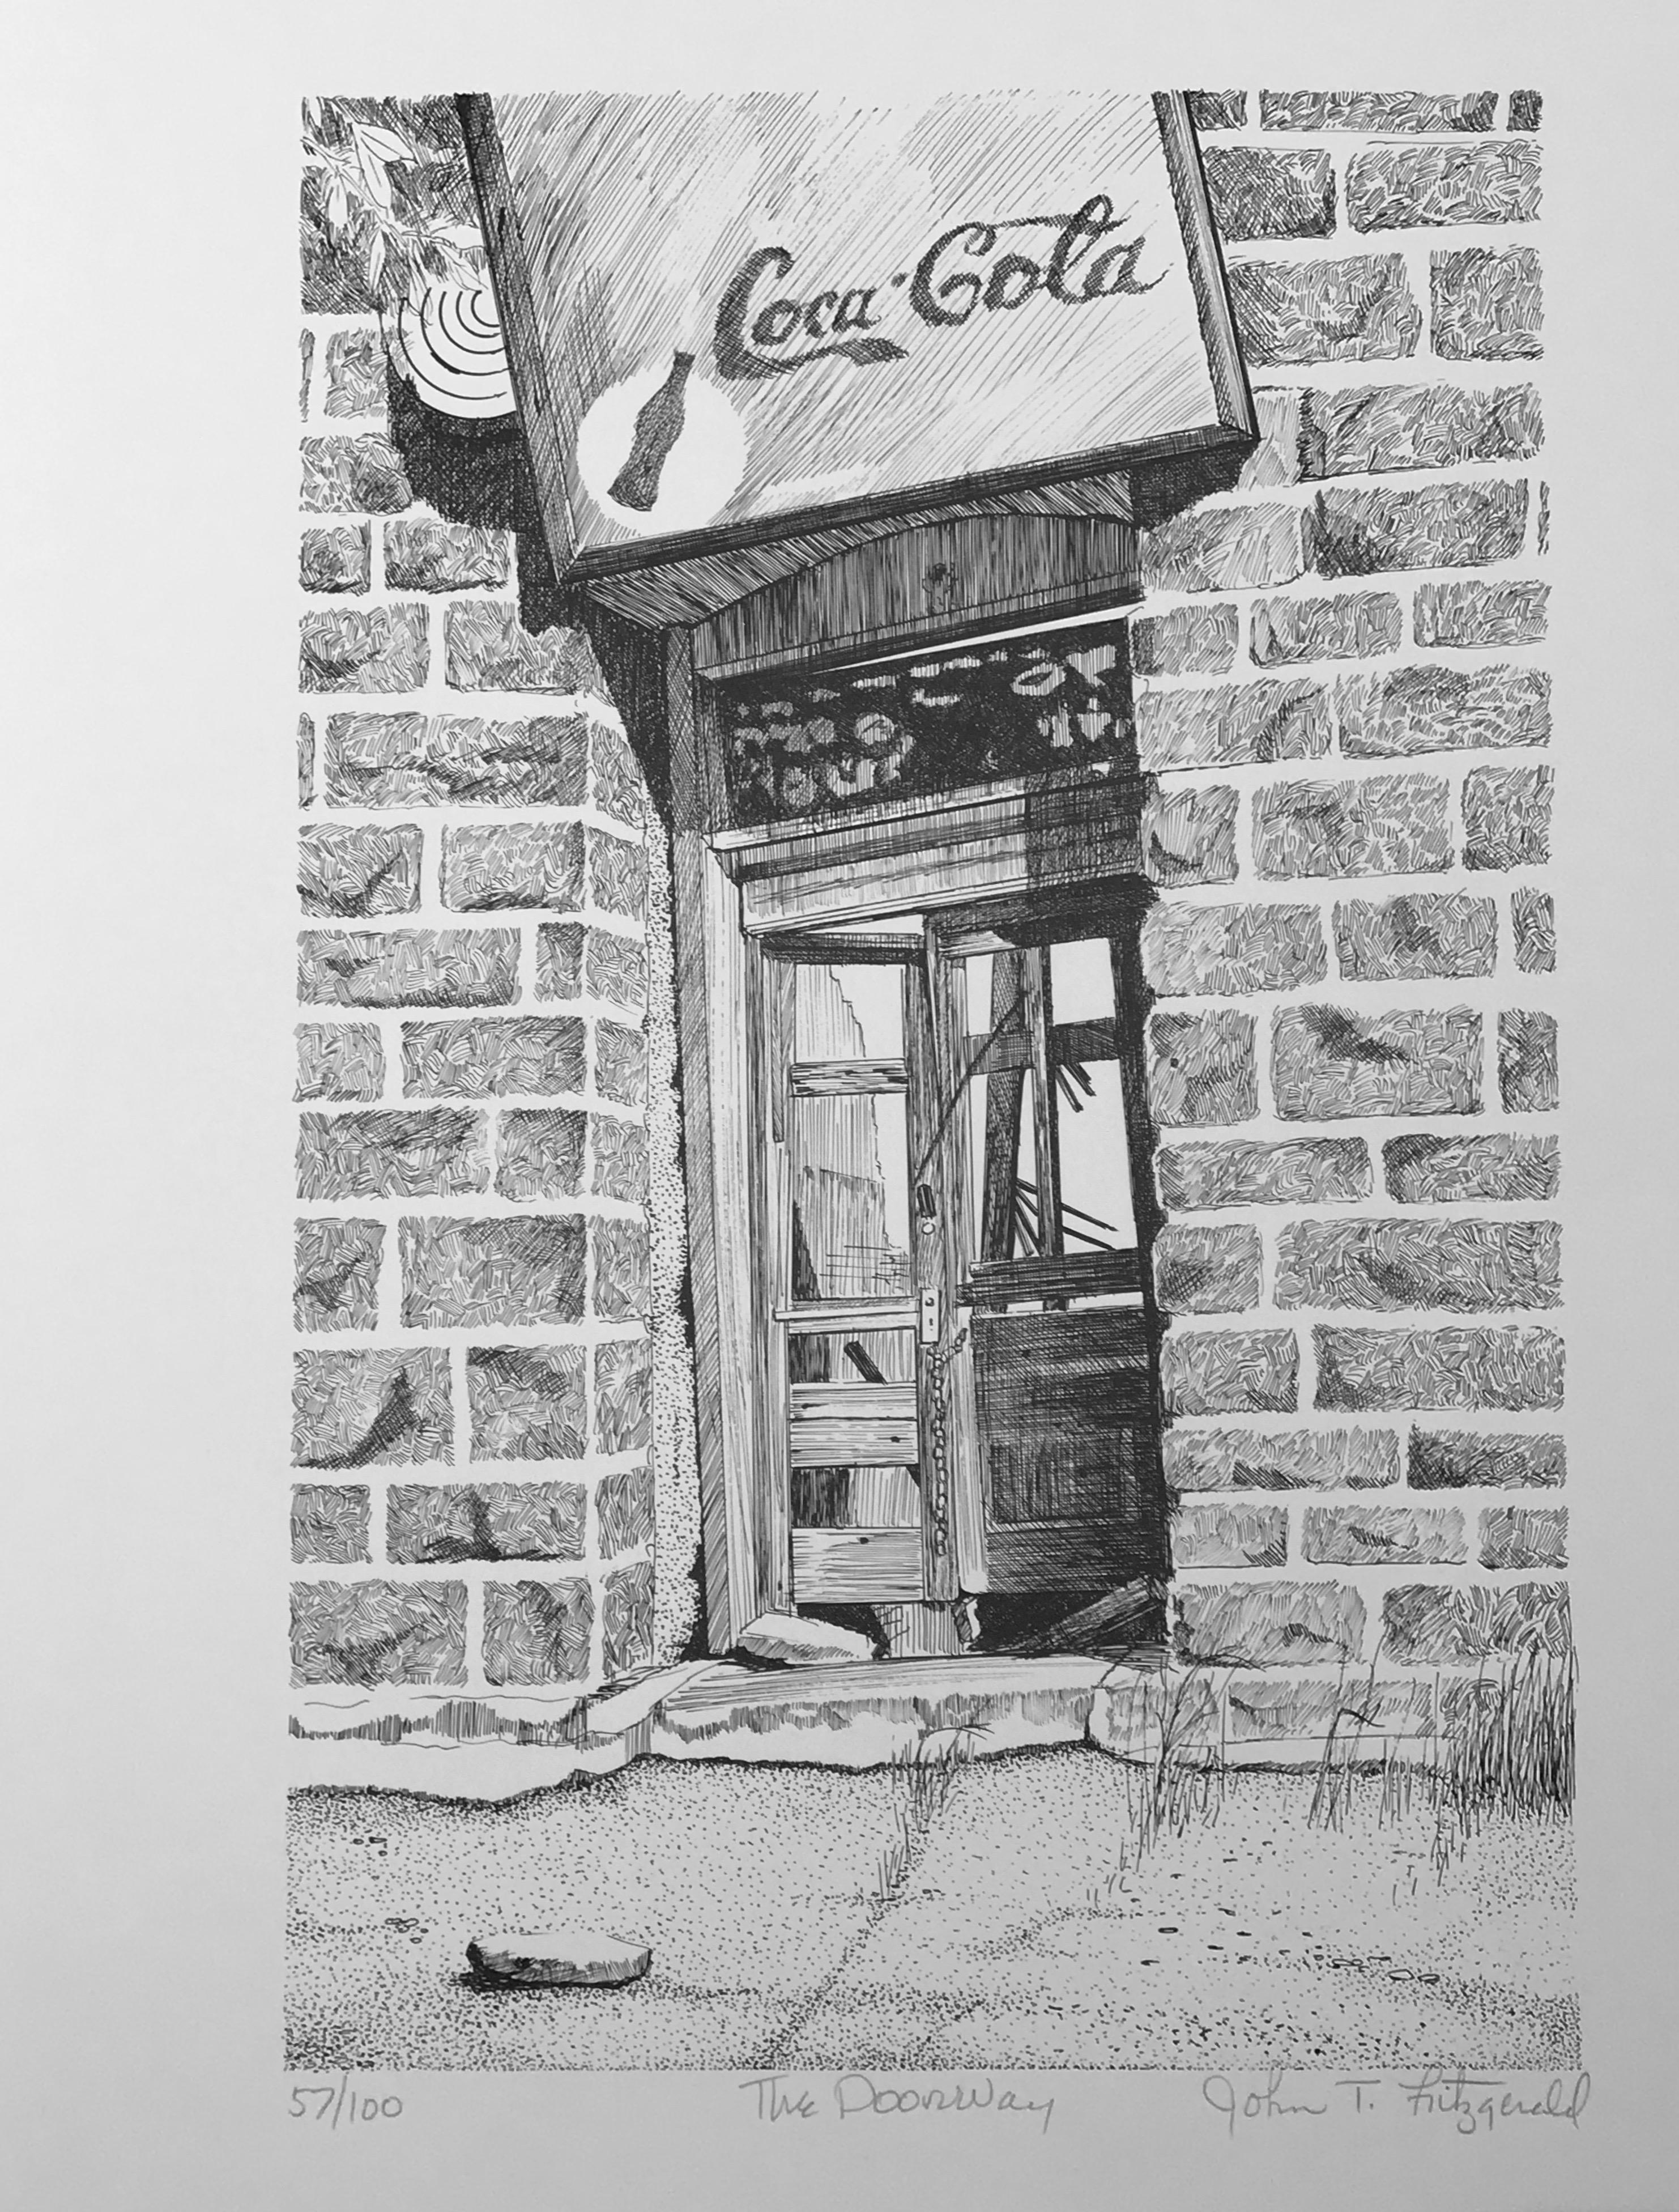 John T. Fitzgerald Still-Life Print - The Doorway by John Fitzgerald, Jerome Old West Arizona Coca Cola sign print